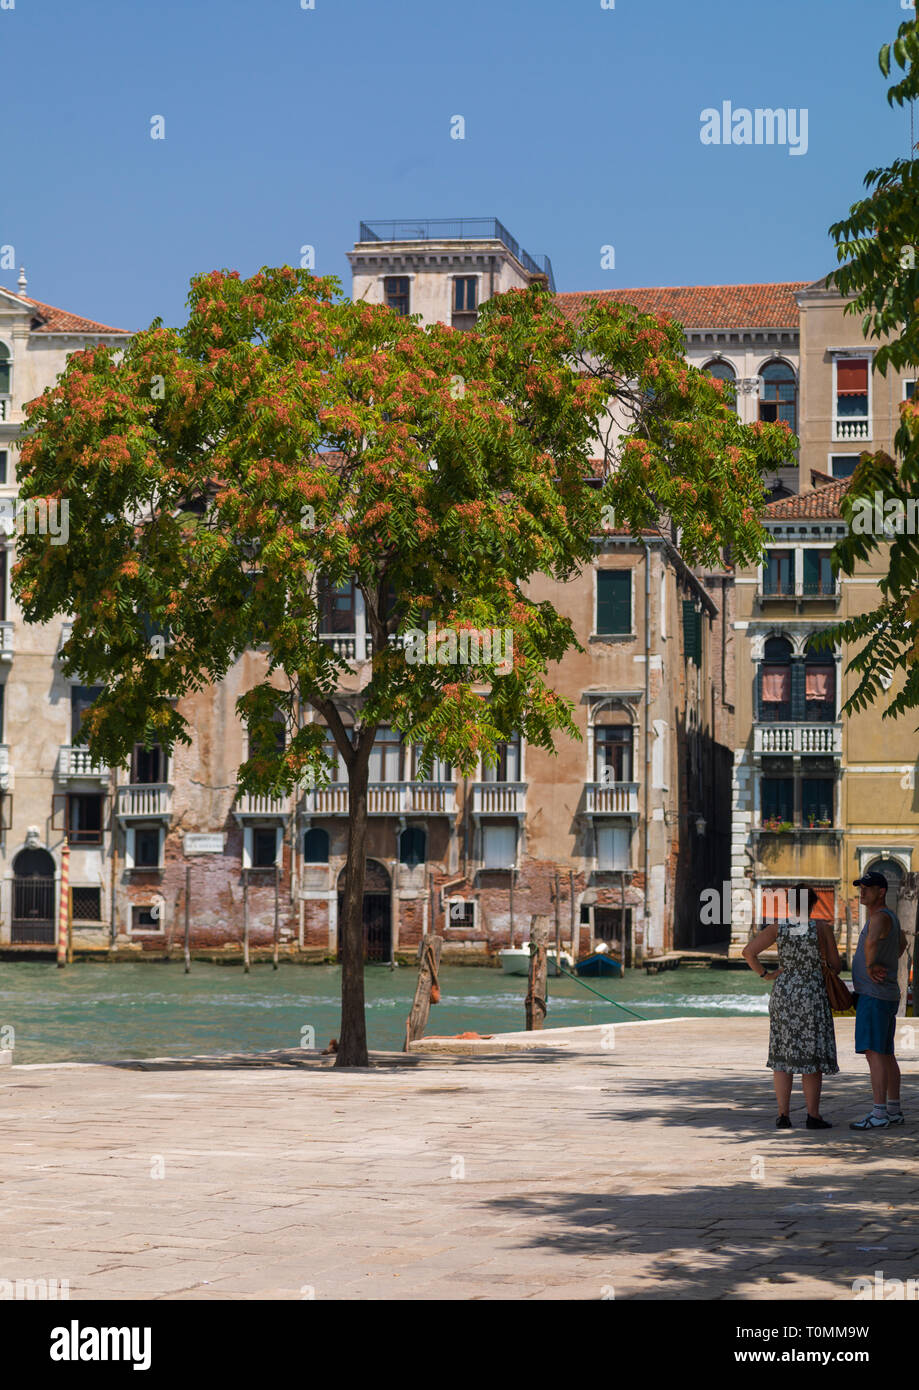 Piazza con un grande albero, regione Veneto, Venezia, Italia Foto Stock